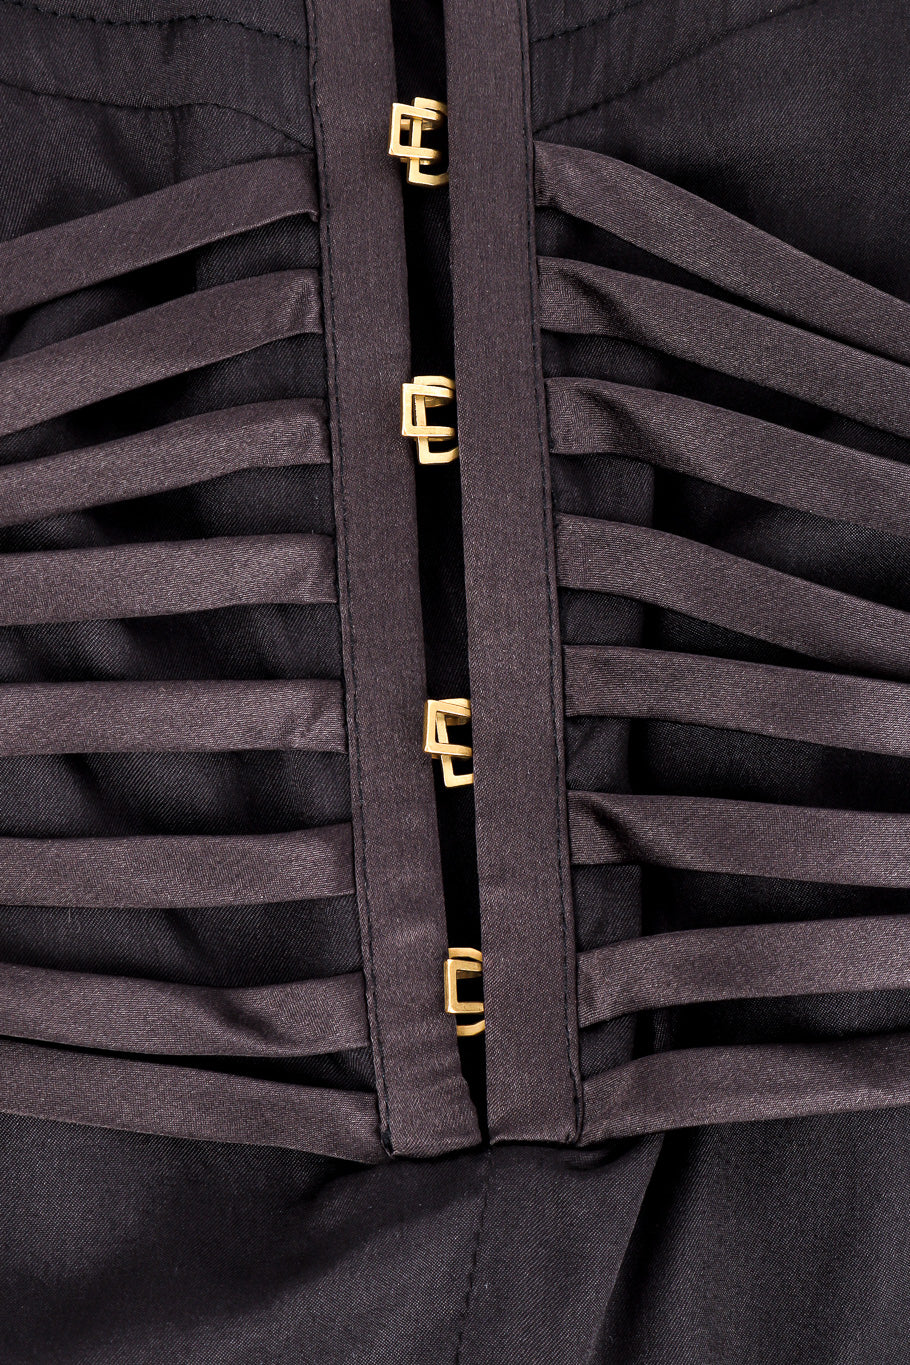 Gucci 2003 F/W Silk Corset Dress front hook clasp closure closeup @Recessla